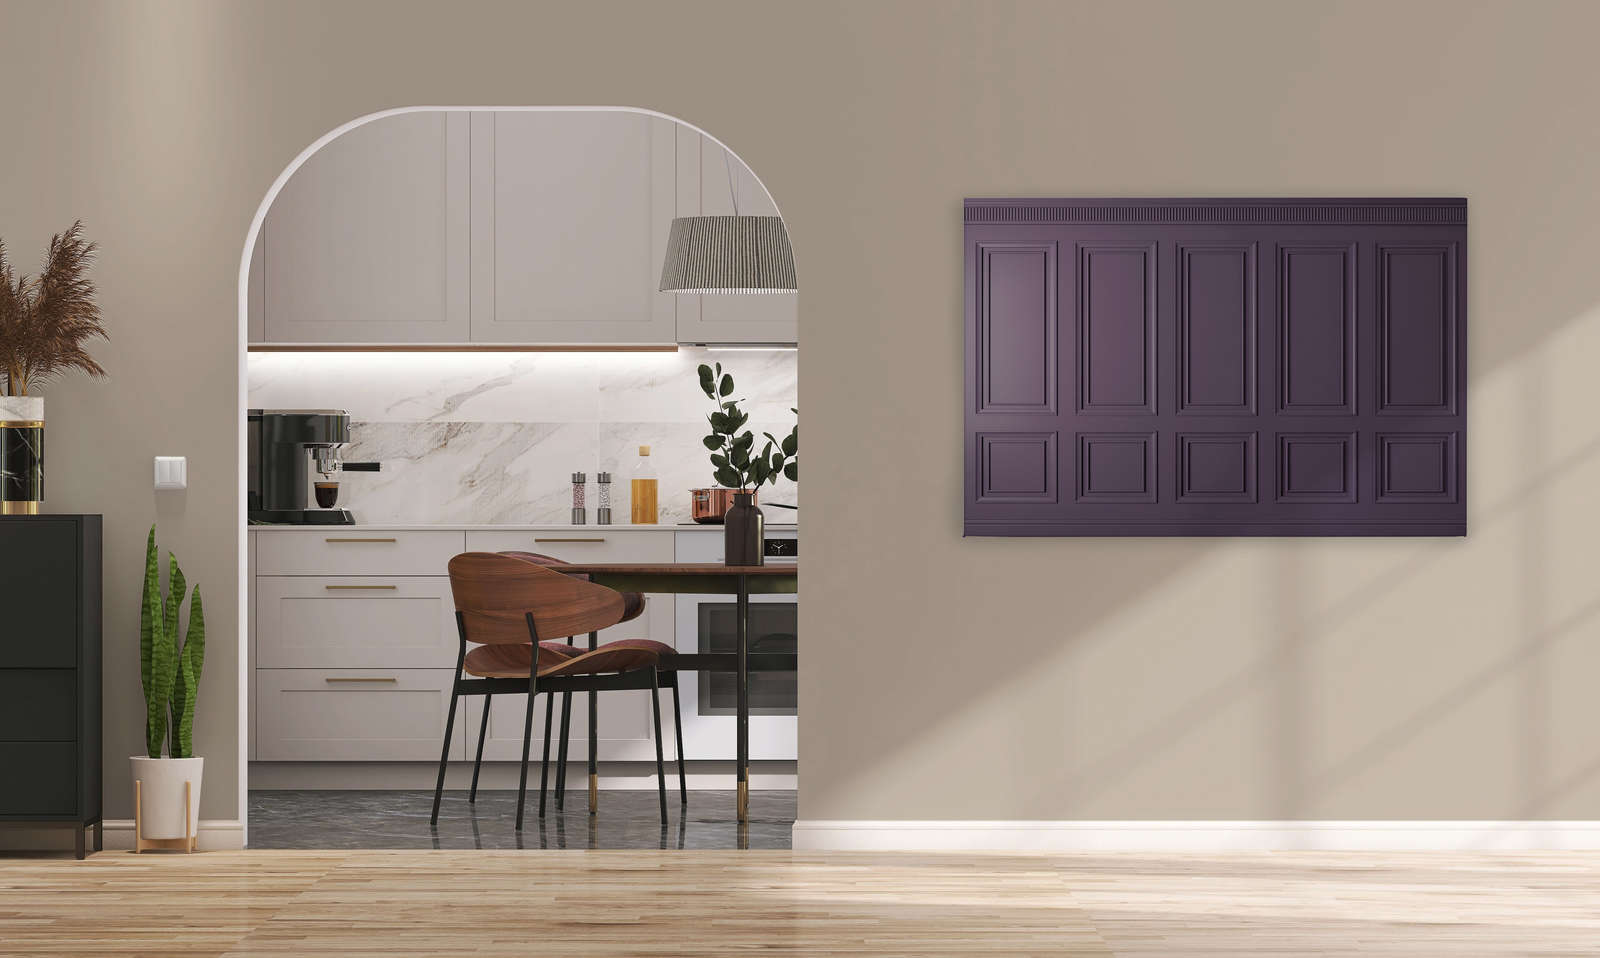             Kensington 3 - 3D Canvas painting wood paneling dark purple, violet - 1.20 m x 0.80 m
        